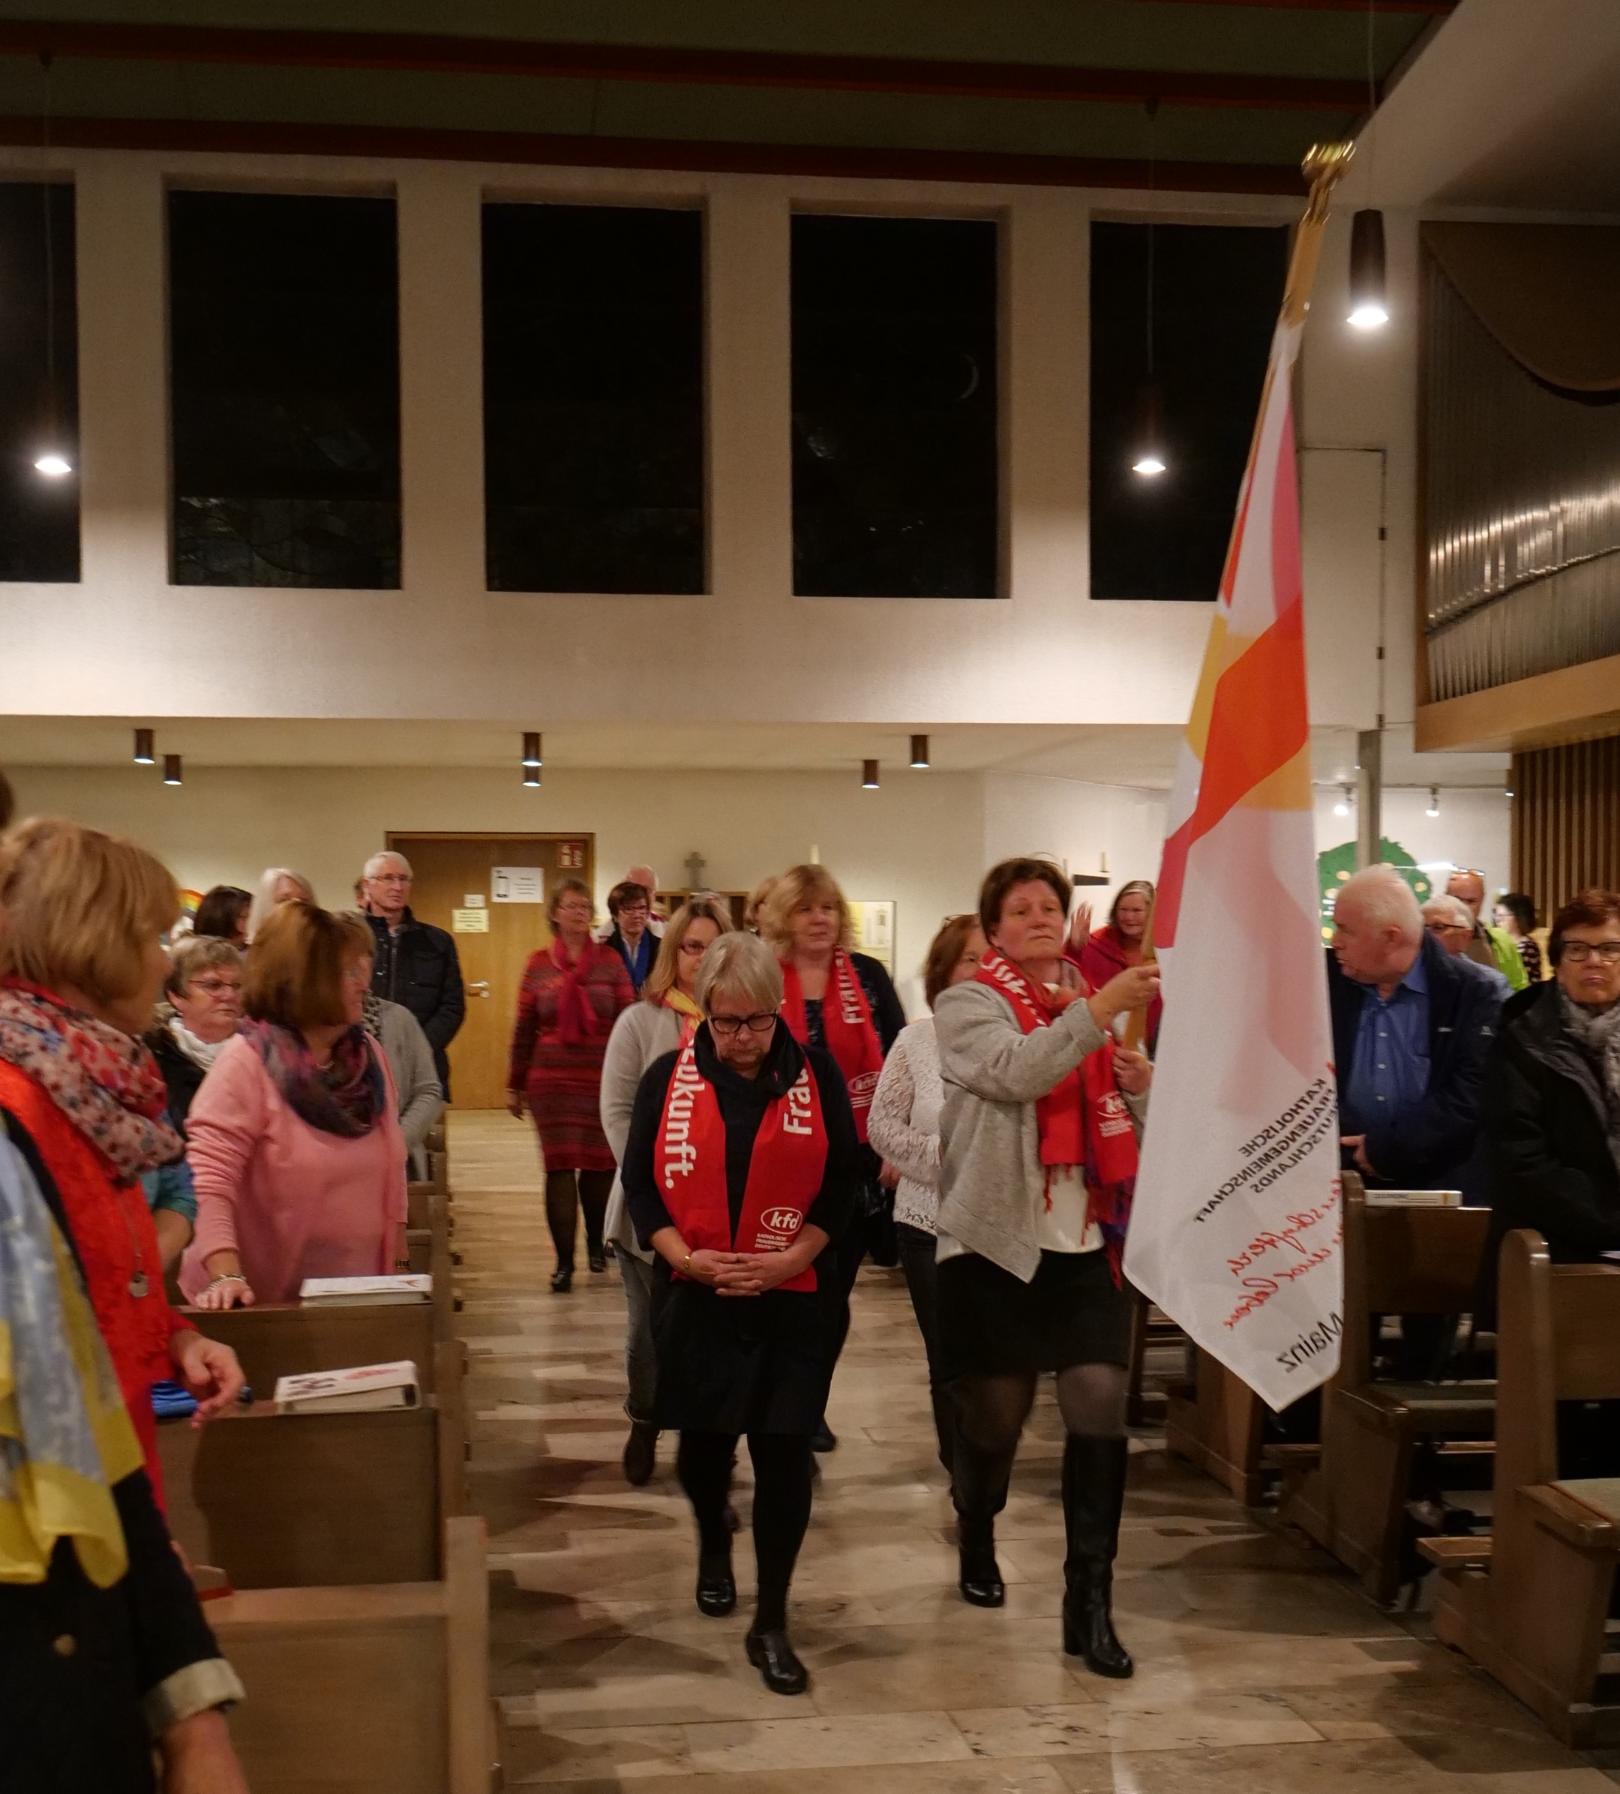 kfd Frauen bringen Schwung in die Kirche (c) Nicole Pawletzki für kfd Mainz